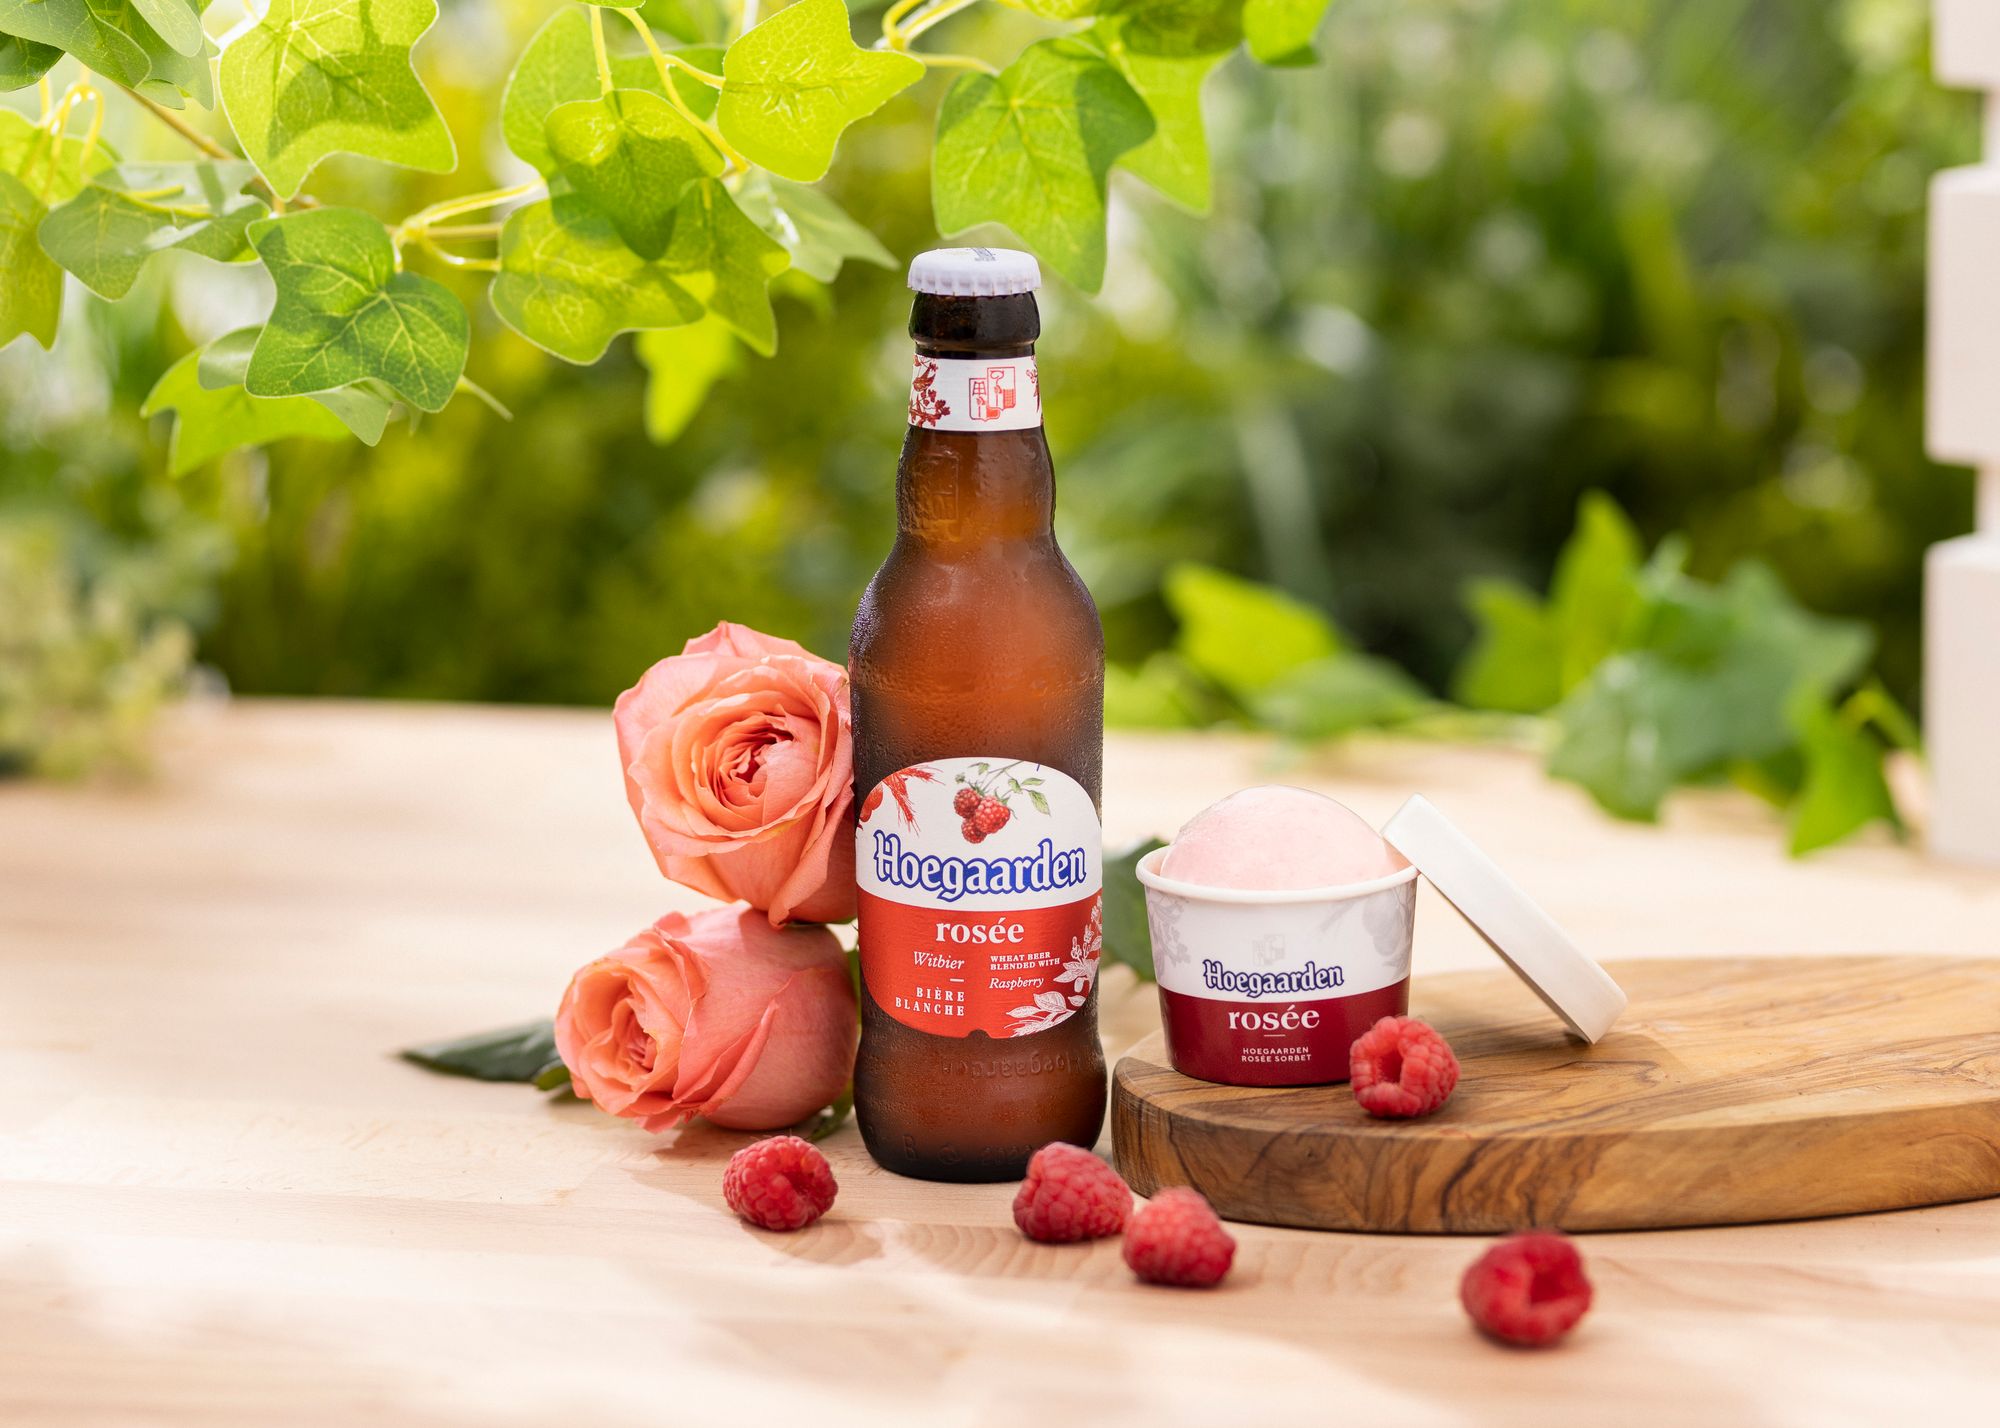 Hoegaarden reveals its latest Fruity Range Rosée Sorbet